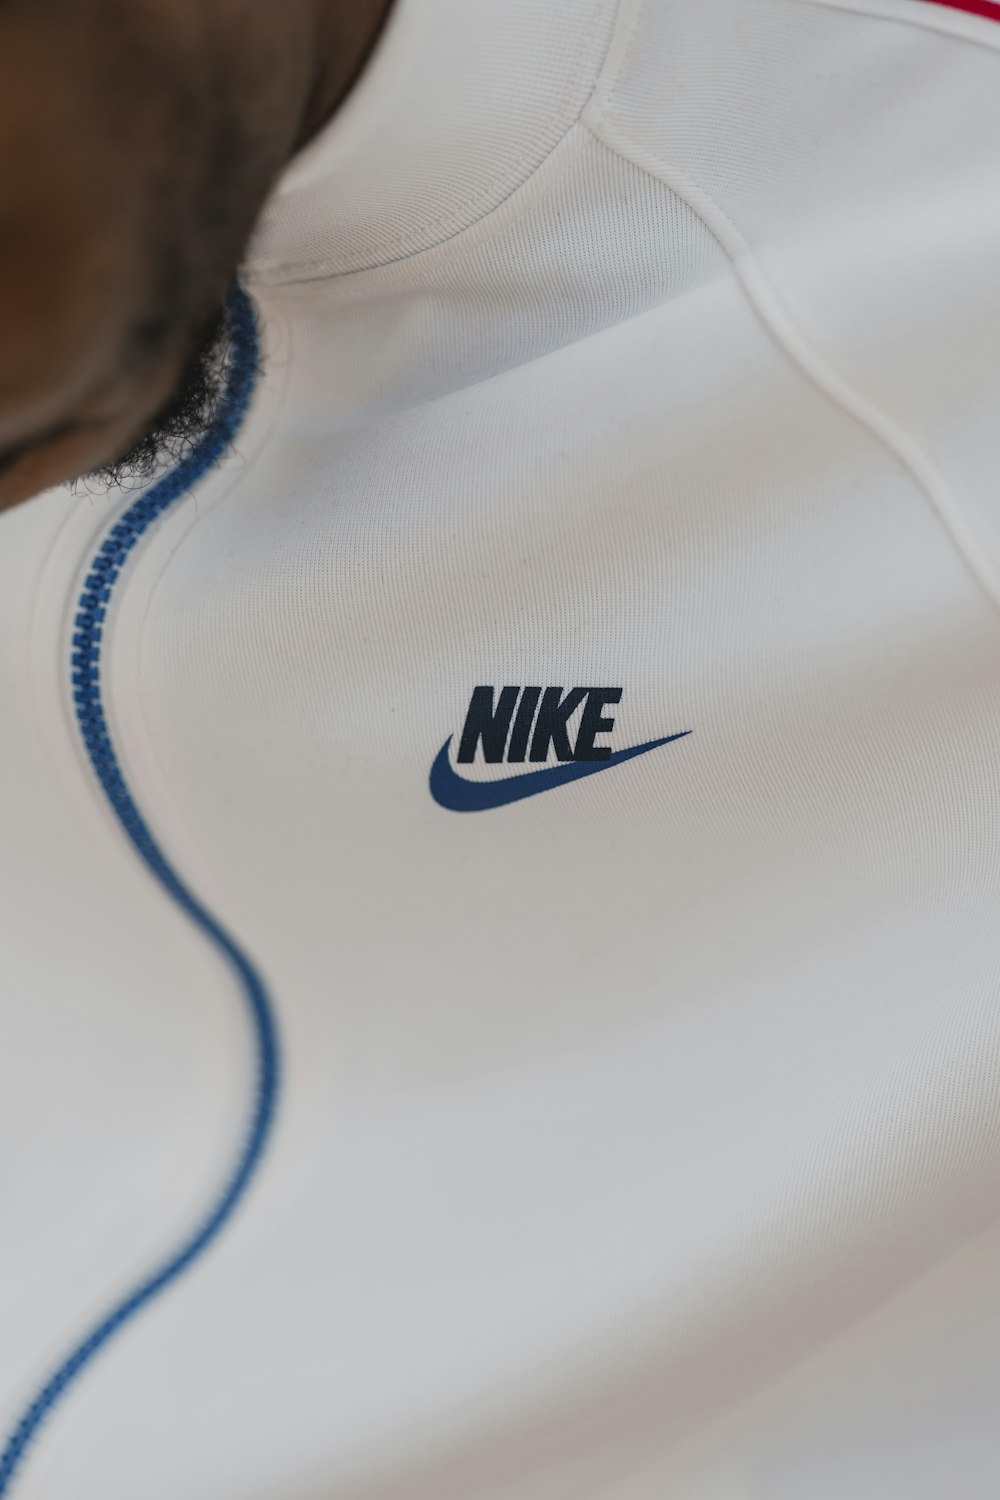 Persona con camisa blanca Nike de cuello redondo